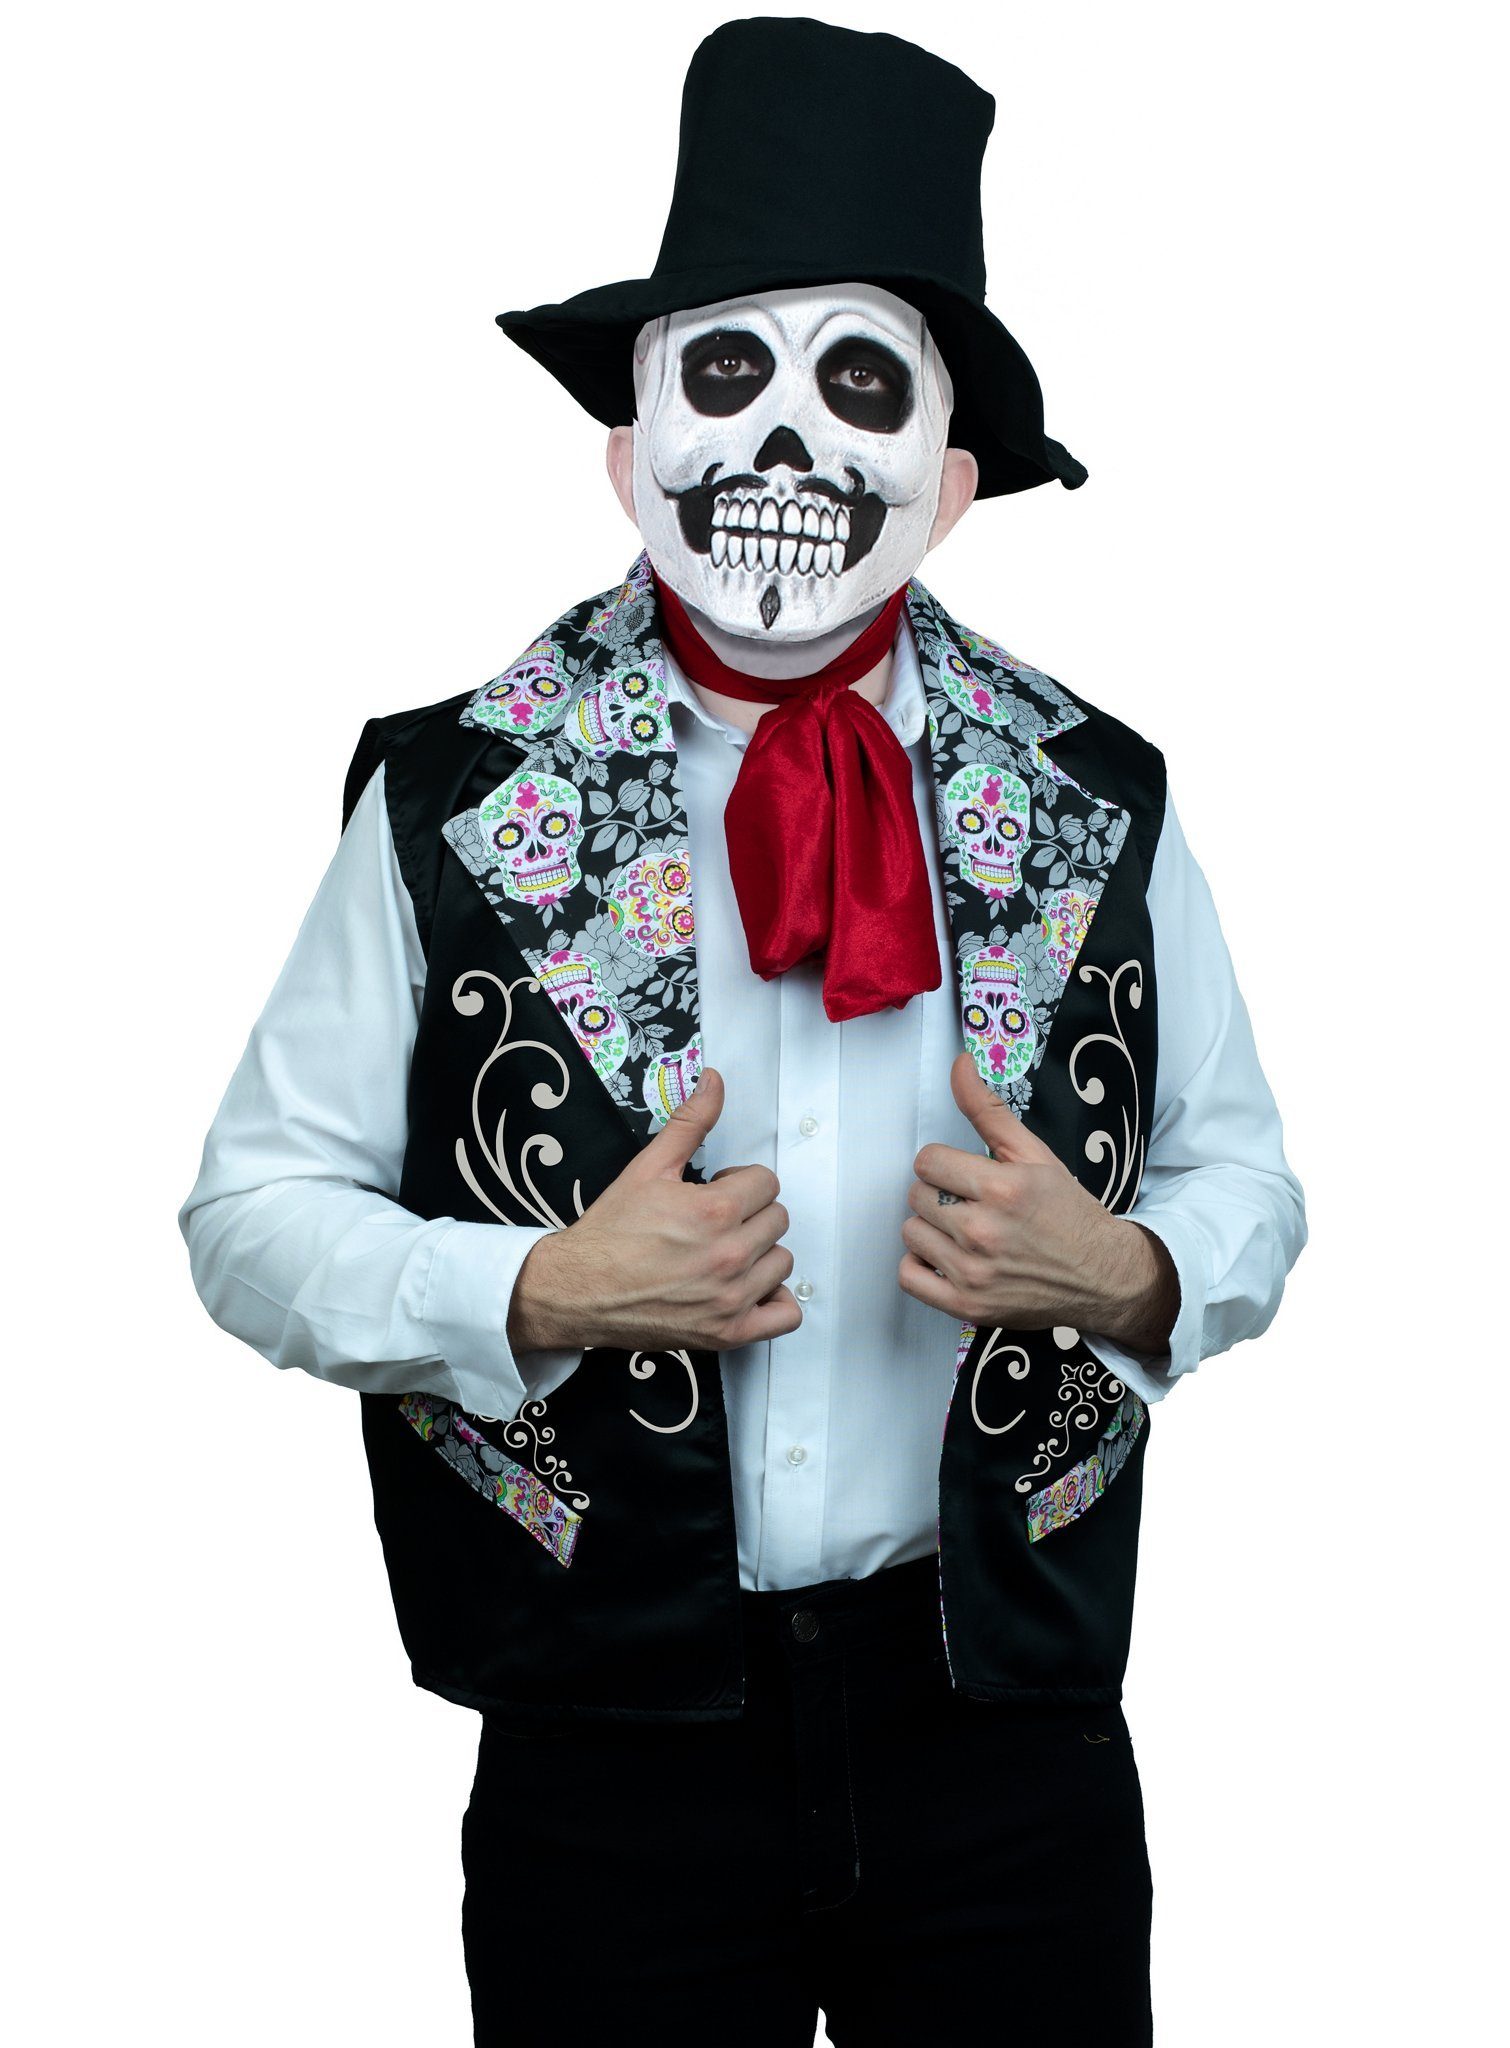 Ghoulish Productions Kostüm Mister Muerte, Für die schnelle Kostümierung zum Dia de los Muertos